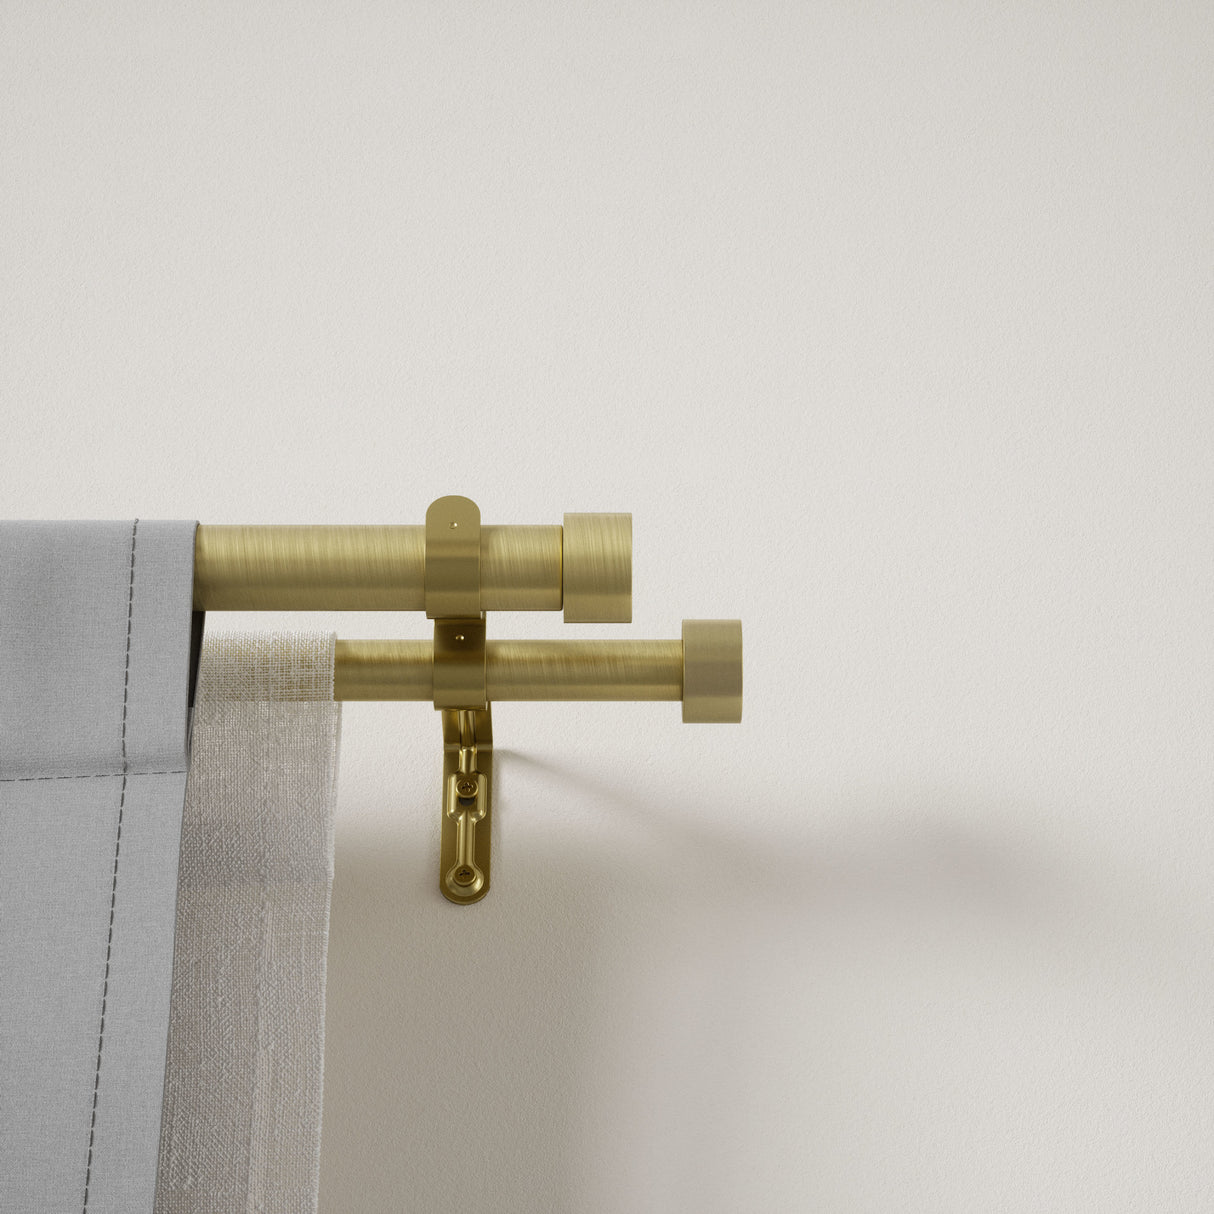 Double Curtain Rods | color: Brass | size: 36-66"(91-168cm) | diameter: 1"(2.5cm) | https://vimeo.com/625708779
